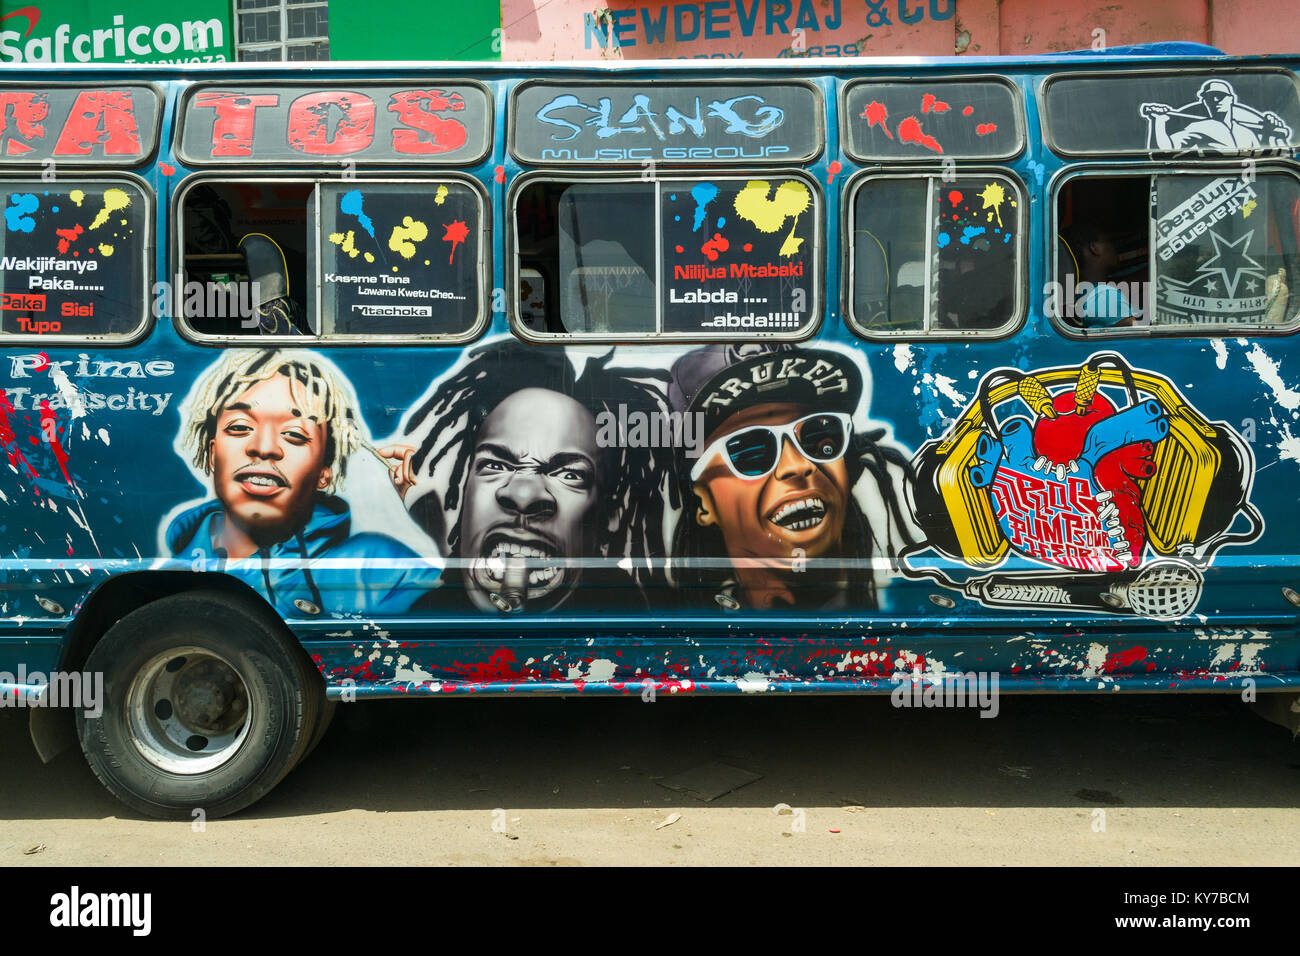 Un decorate luminosamente bus con artwork attende dal lato della strada con i passeggeri a bordo, Nairobi, Kenya, Africa orientale Foto Stock